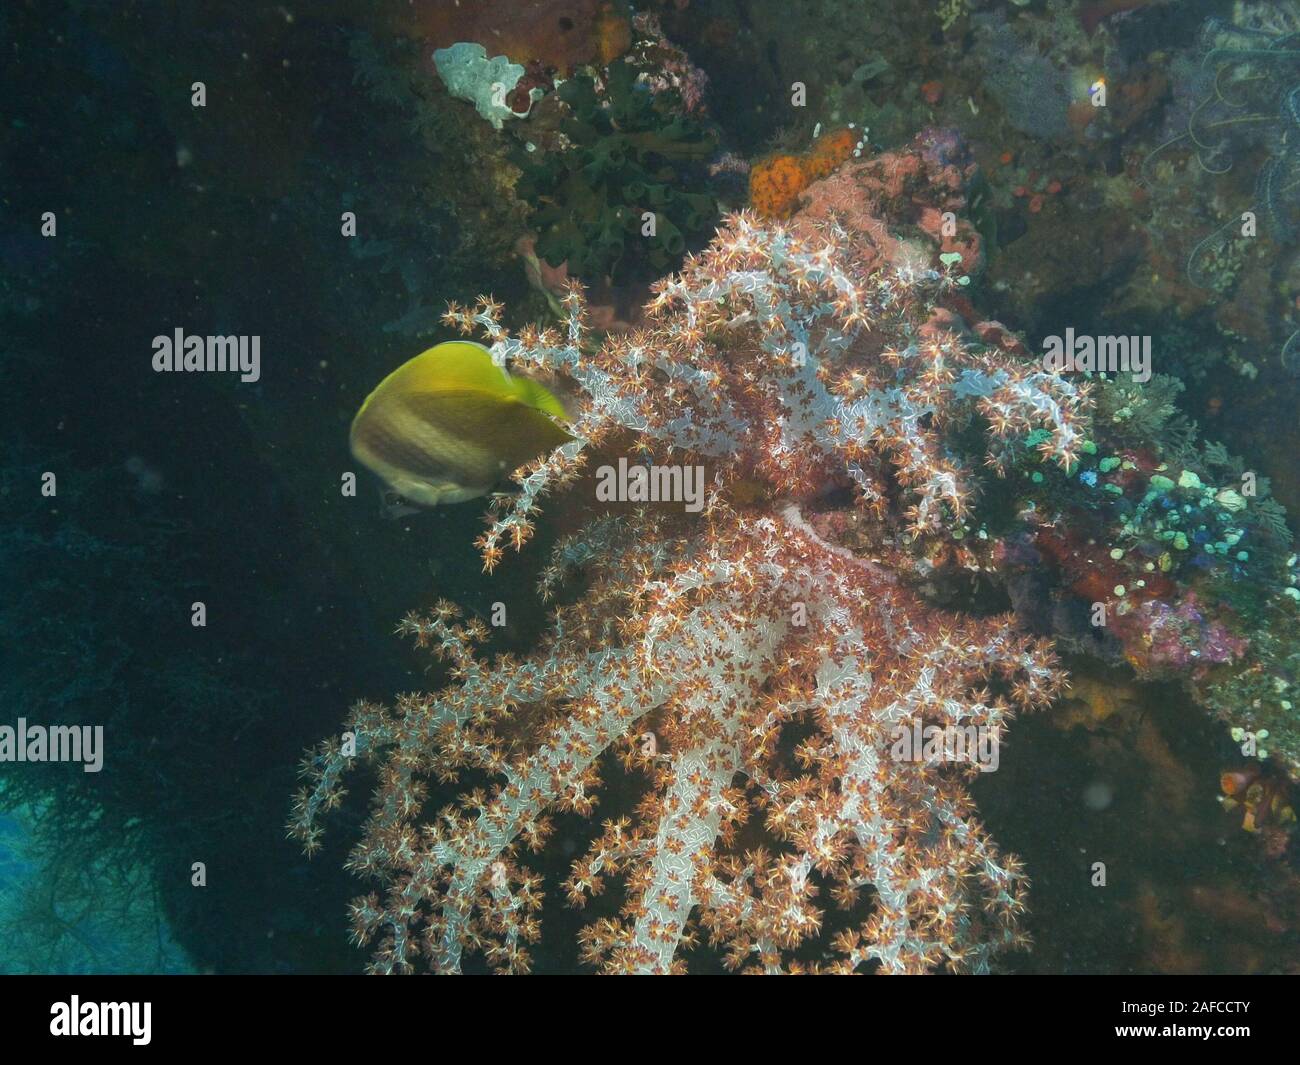 Gros plan d'une croissance de coraux mous sur l'épave de tulamben, usat liberty in bali Banque D'Images